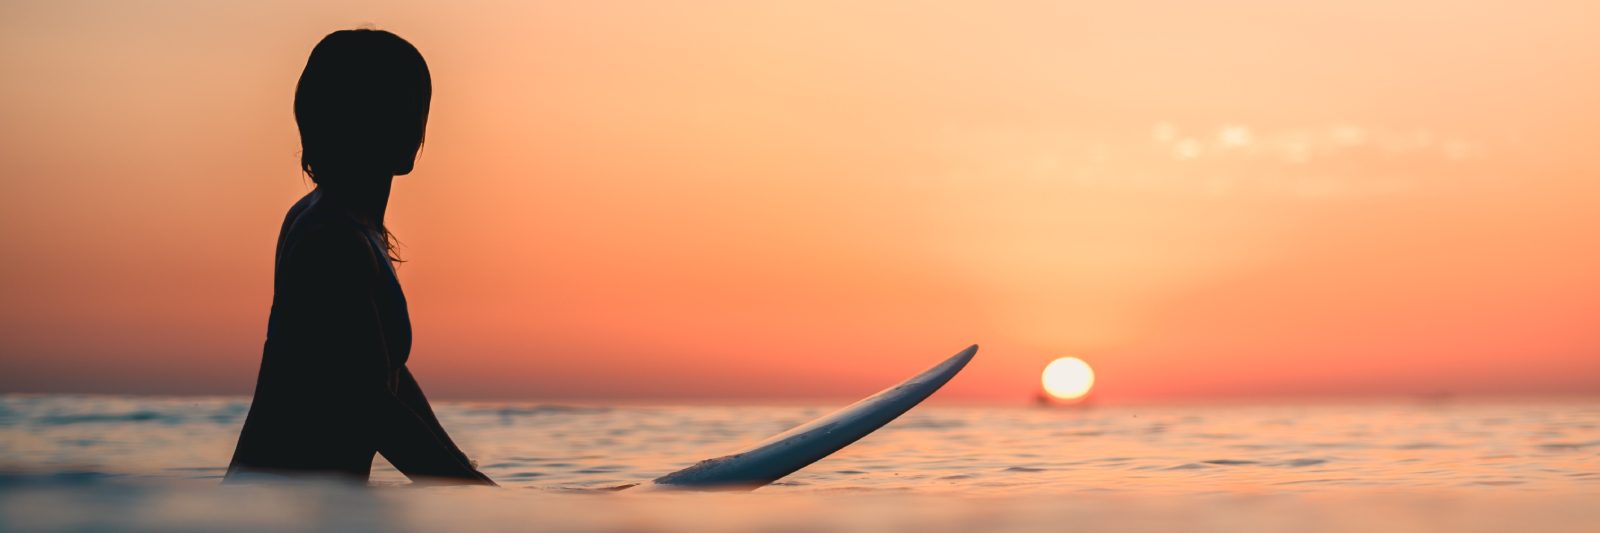 tramonto e surf